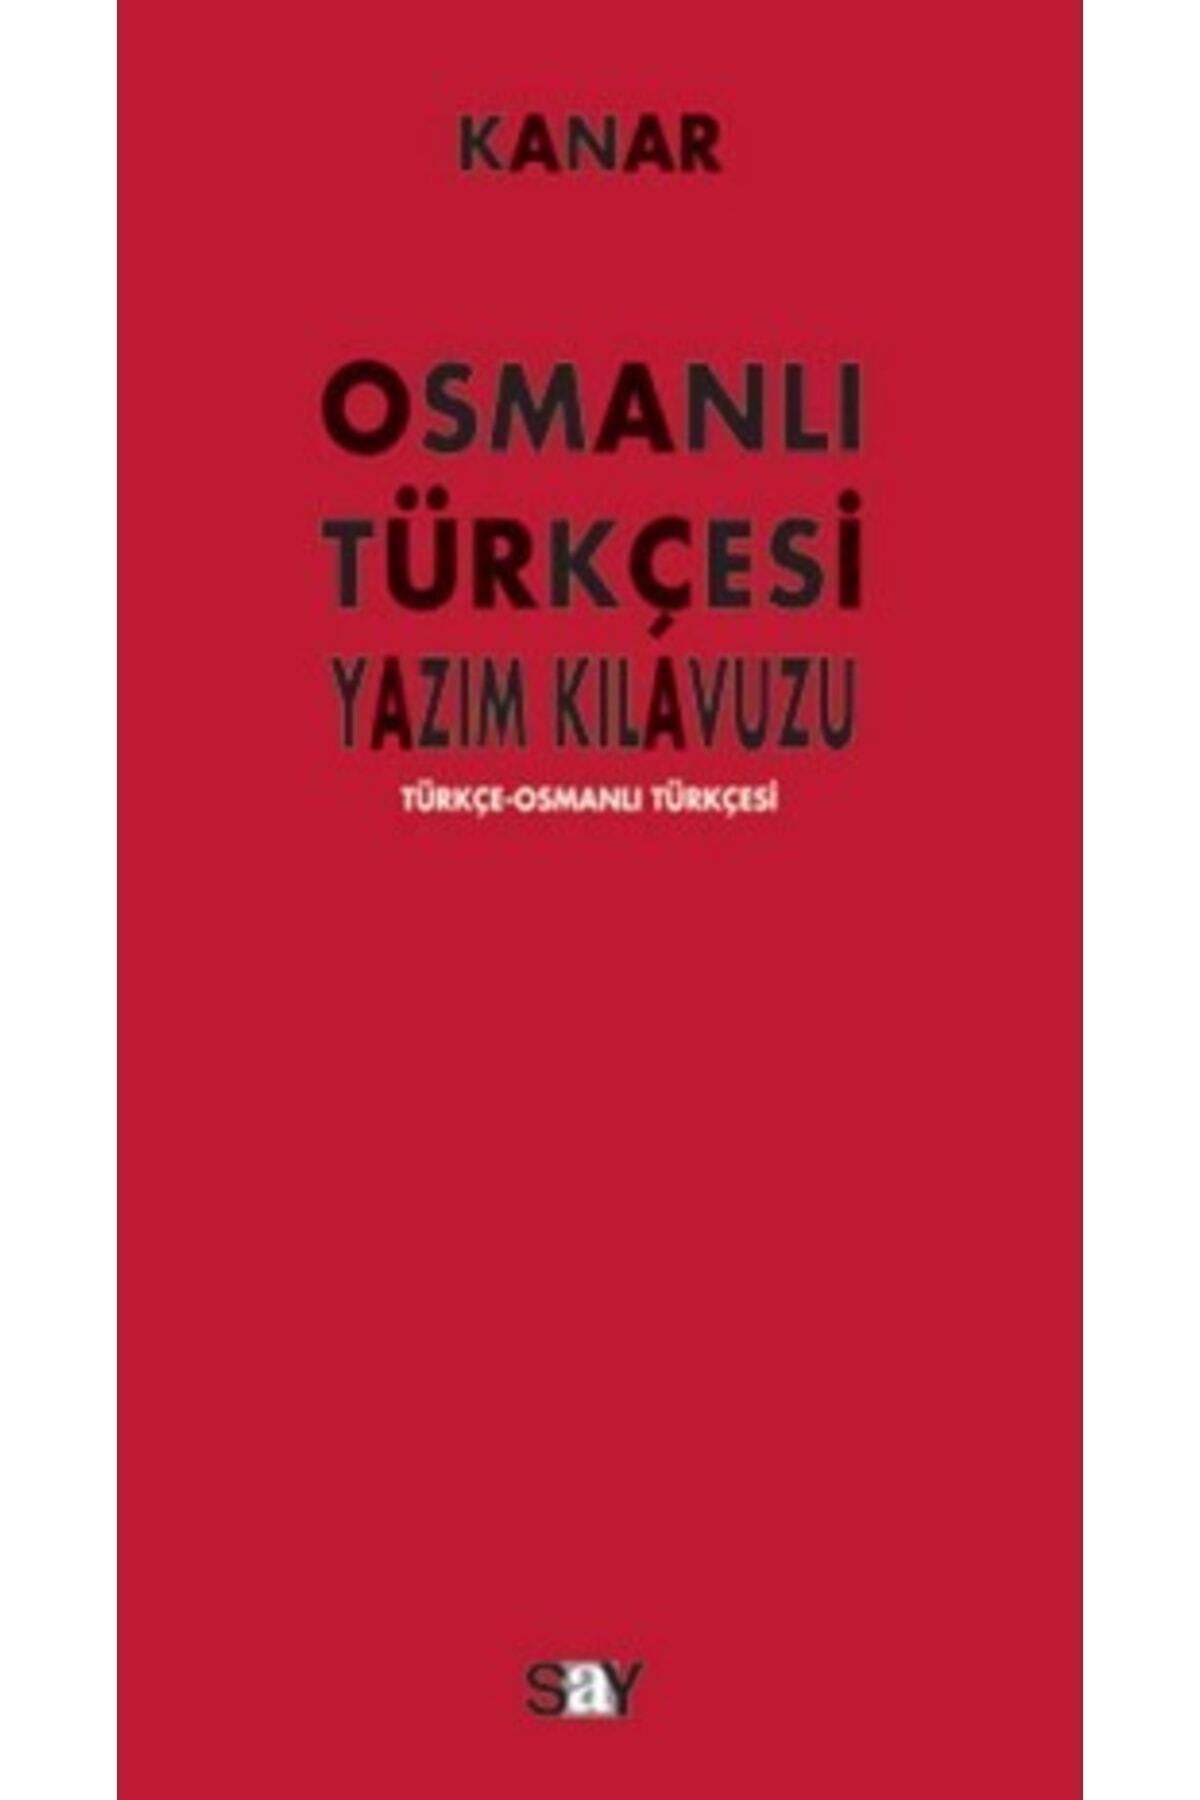 Say Yayınları Osmanlı Türkçesi Yazım Kılavuzu